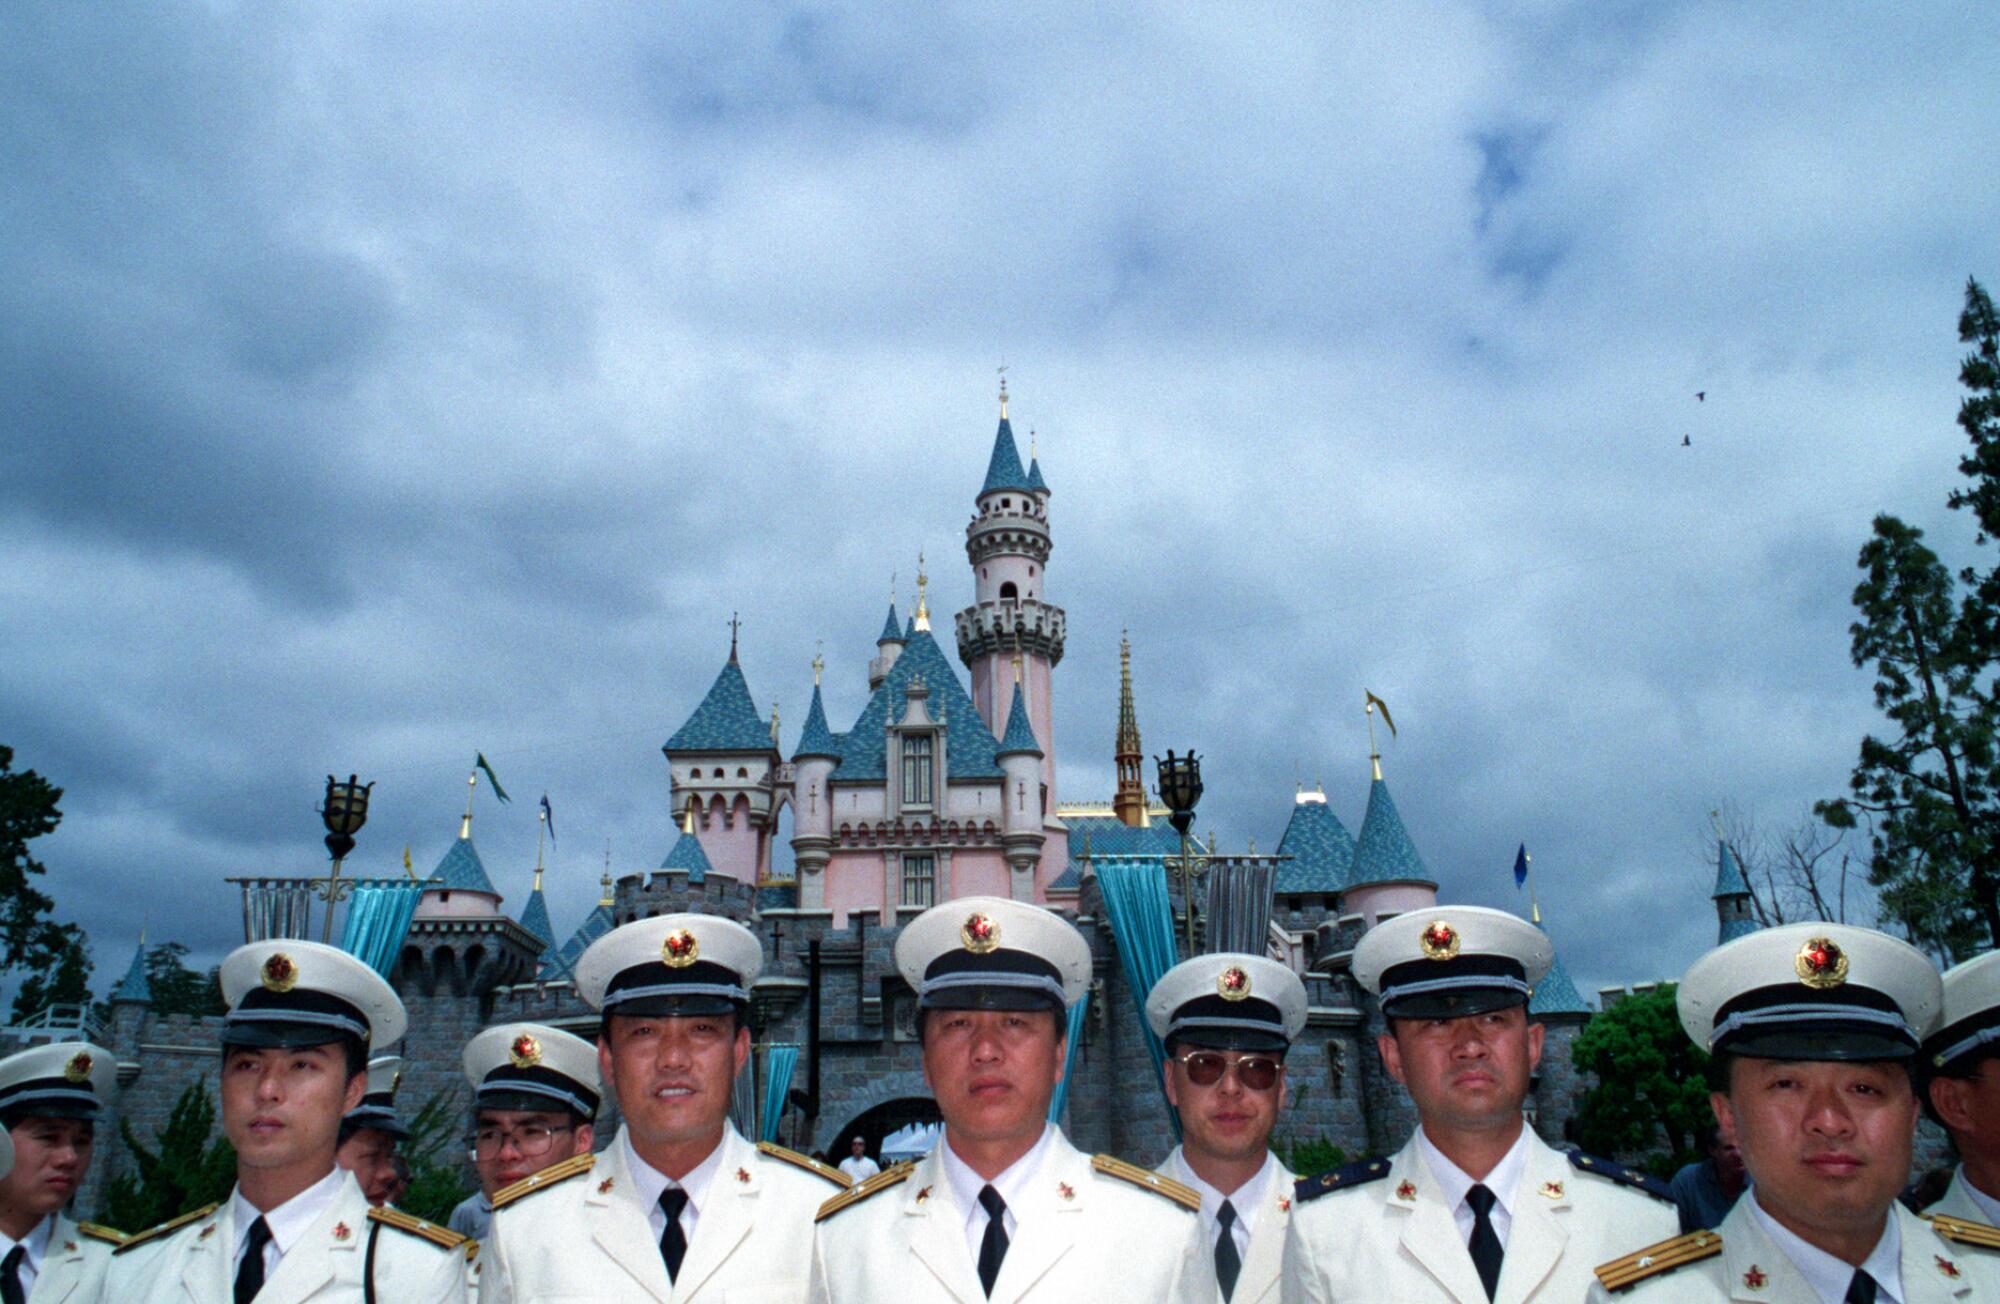 Navy men in white uniforms